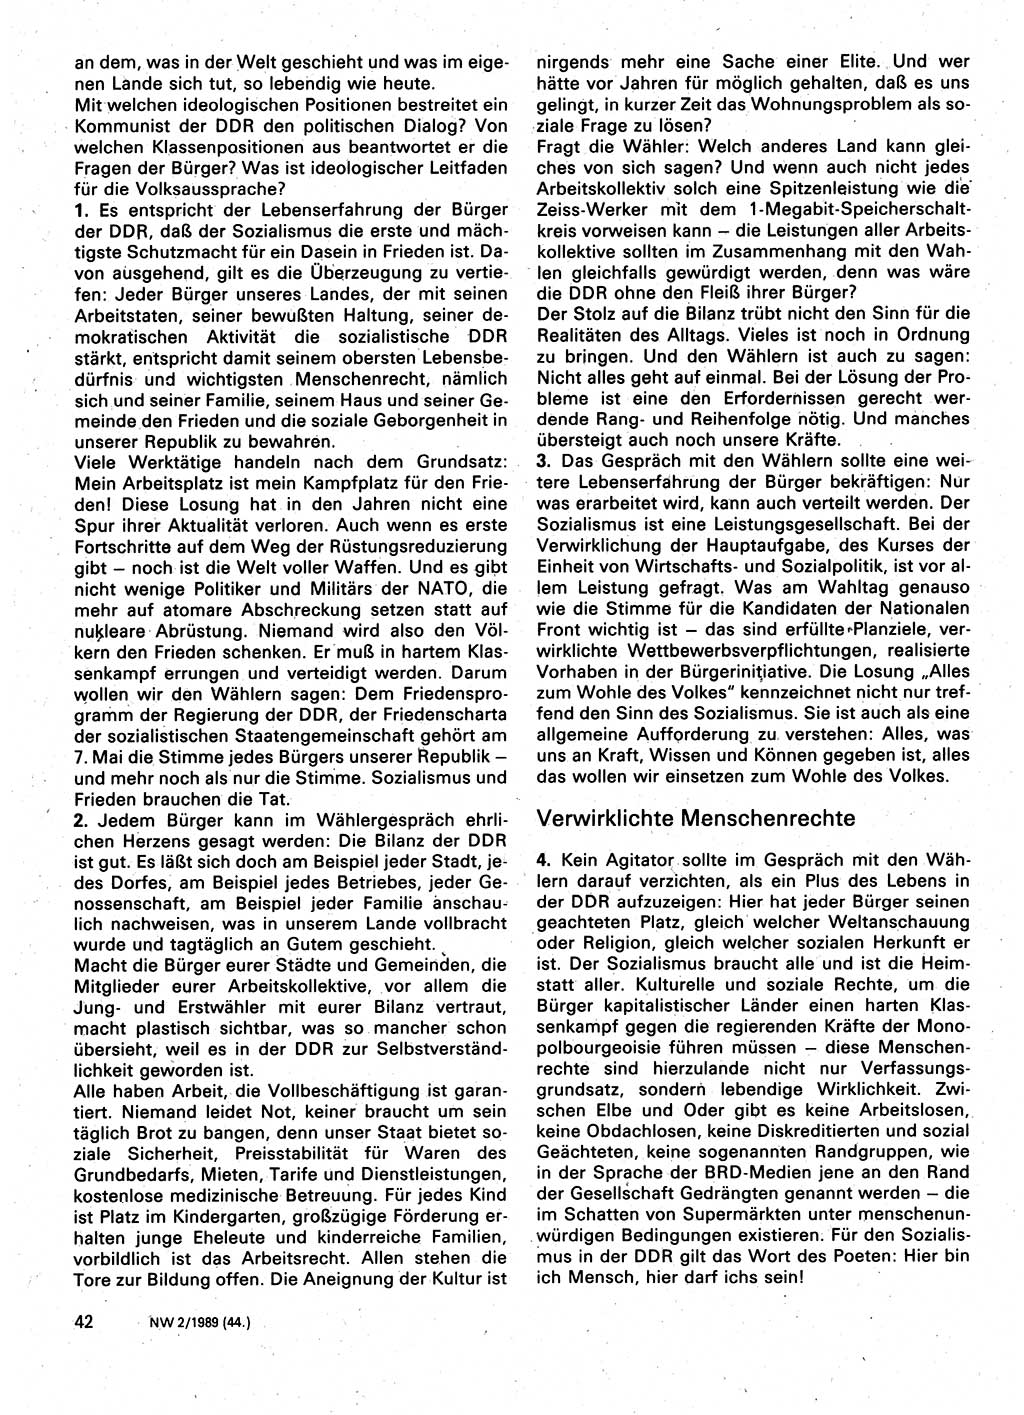 Neuer Weg (NW), Organ des Zentralkomitees (ZK) der SED (Sozialistische Einheitspartei Deutschlands) für Fragen des Parteilebens, 44. Jahrgang [Deutsche Demokratische Republik (DDR)] 1989, Seite 42 (NW ZK SED DDR 1989, S. 42)